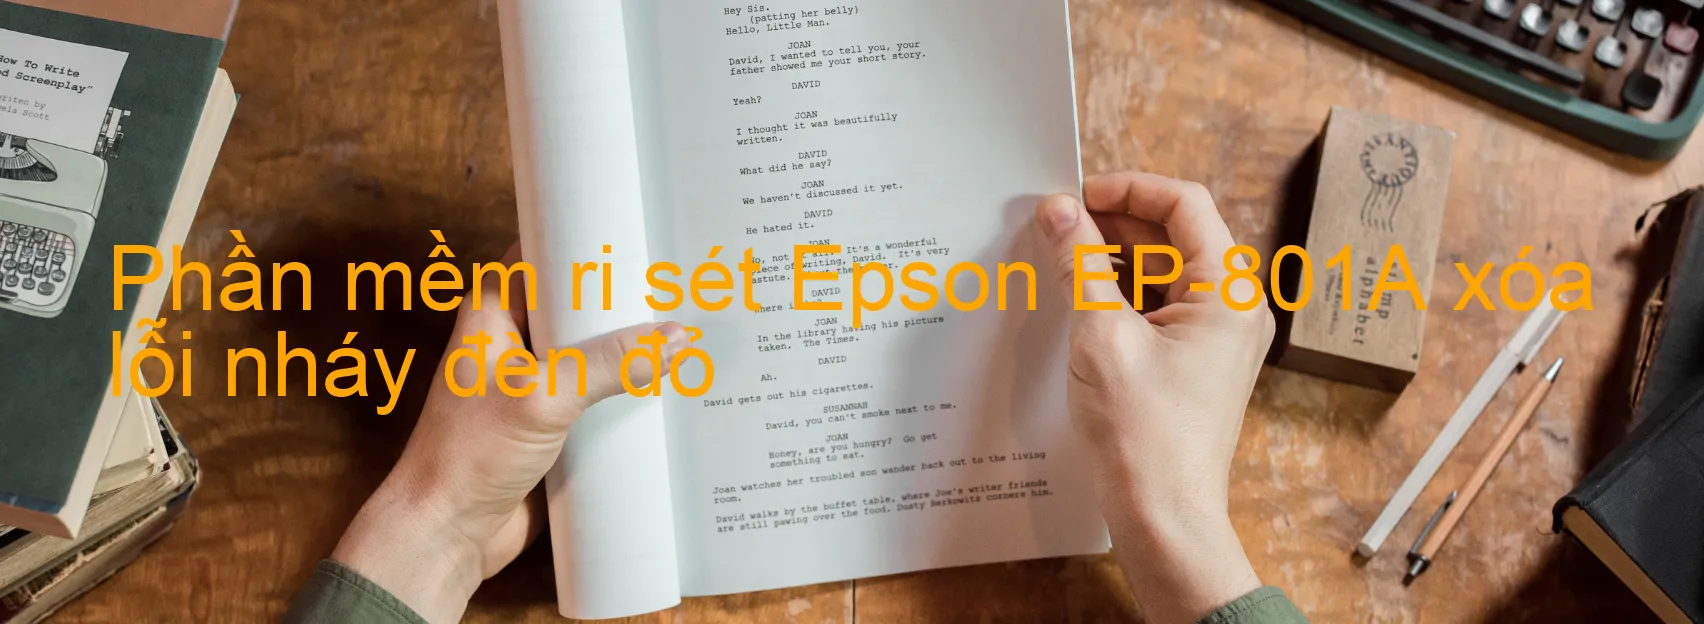 Phần mềm reset Epson EP-801A xóa lỗi nháy đèn đỏ